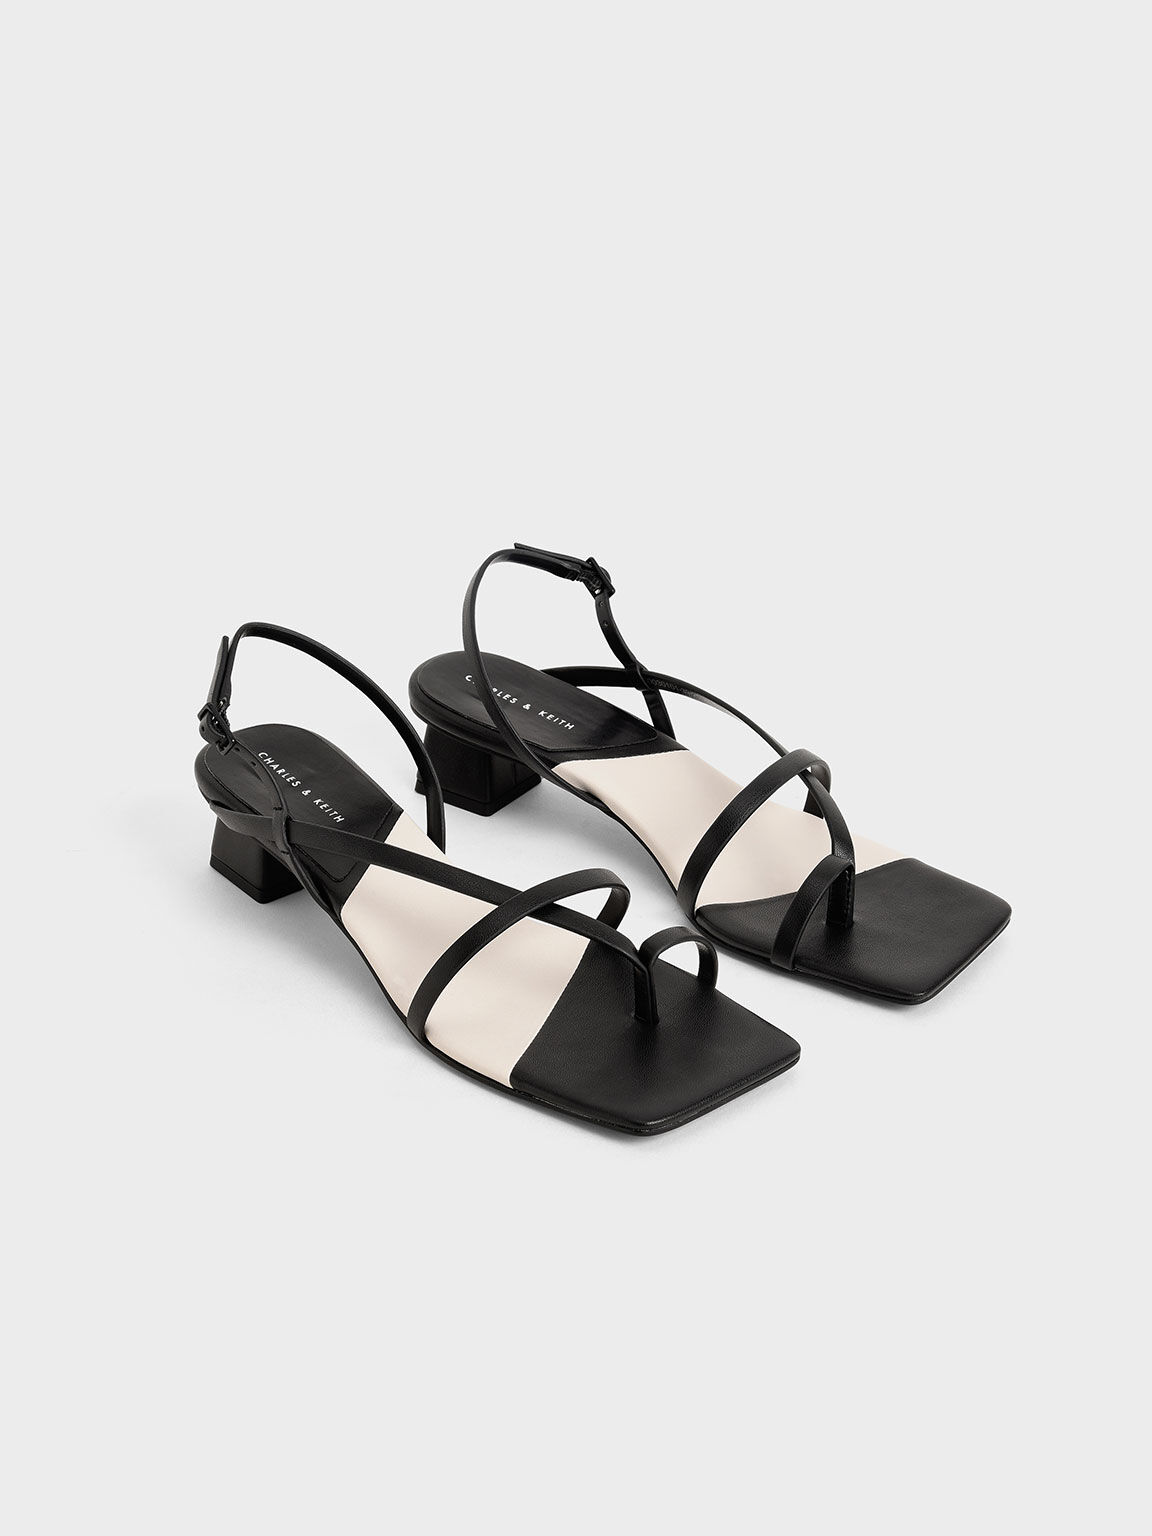 Strappy Slingback Sandals, Black, hi-res